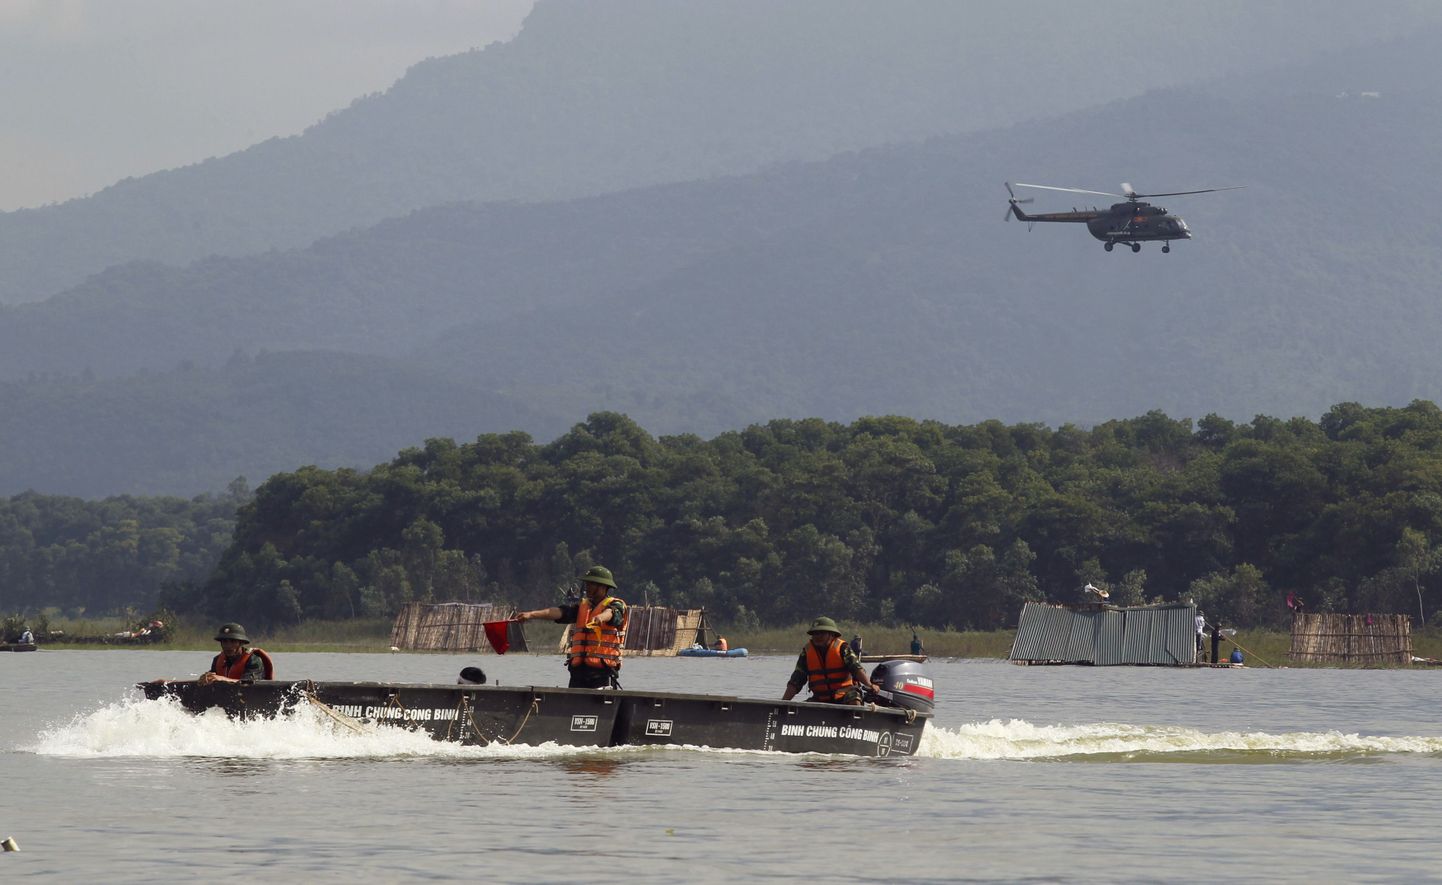 Vietnami sõjaväelased ja humanitaarabiga helikopter üleujutatud piirkondades.